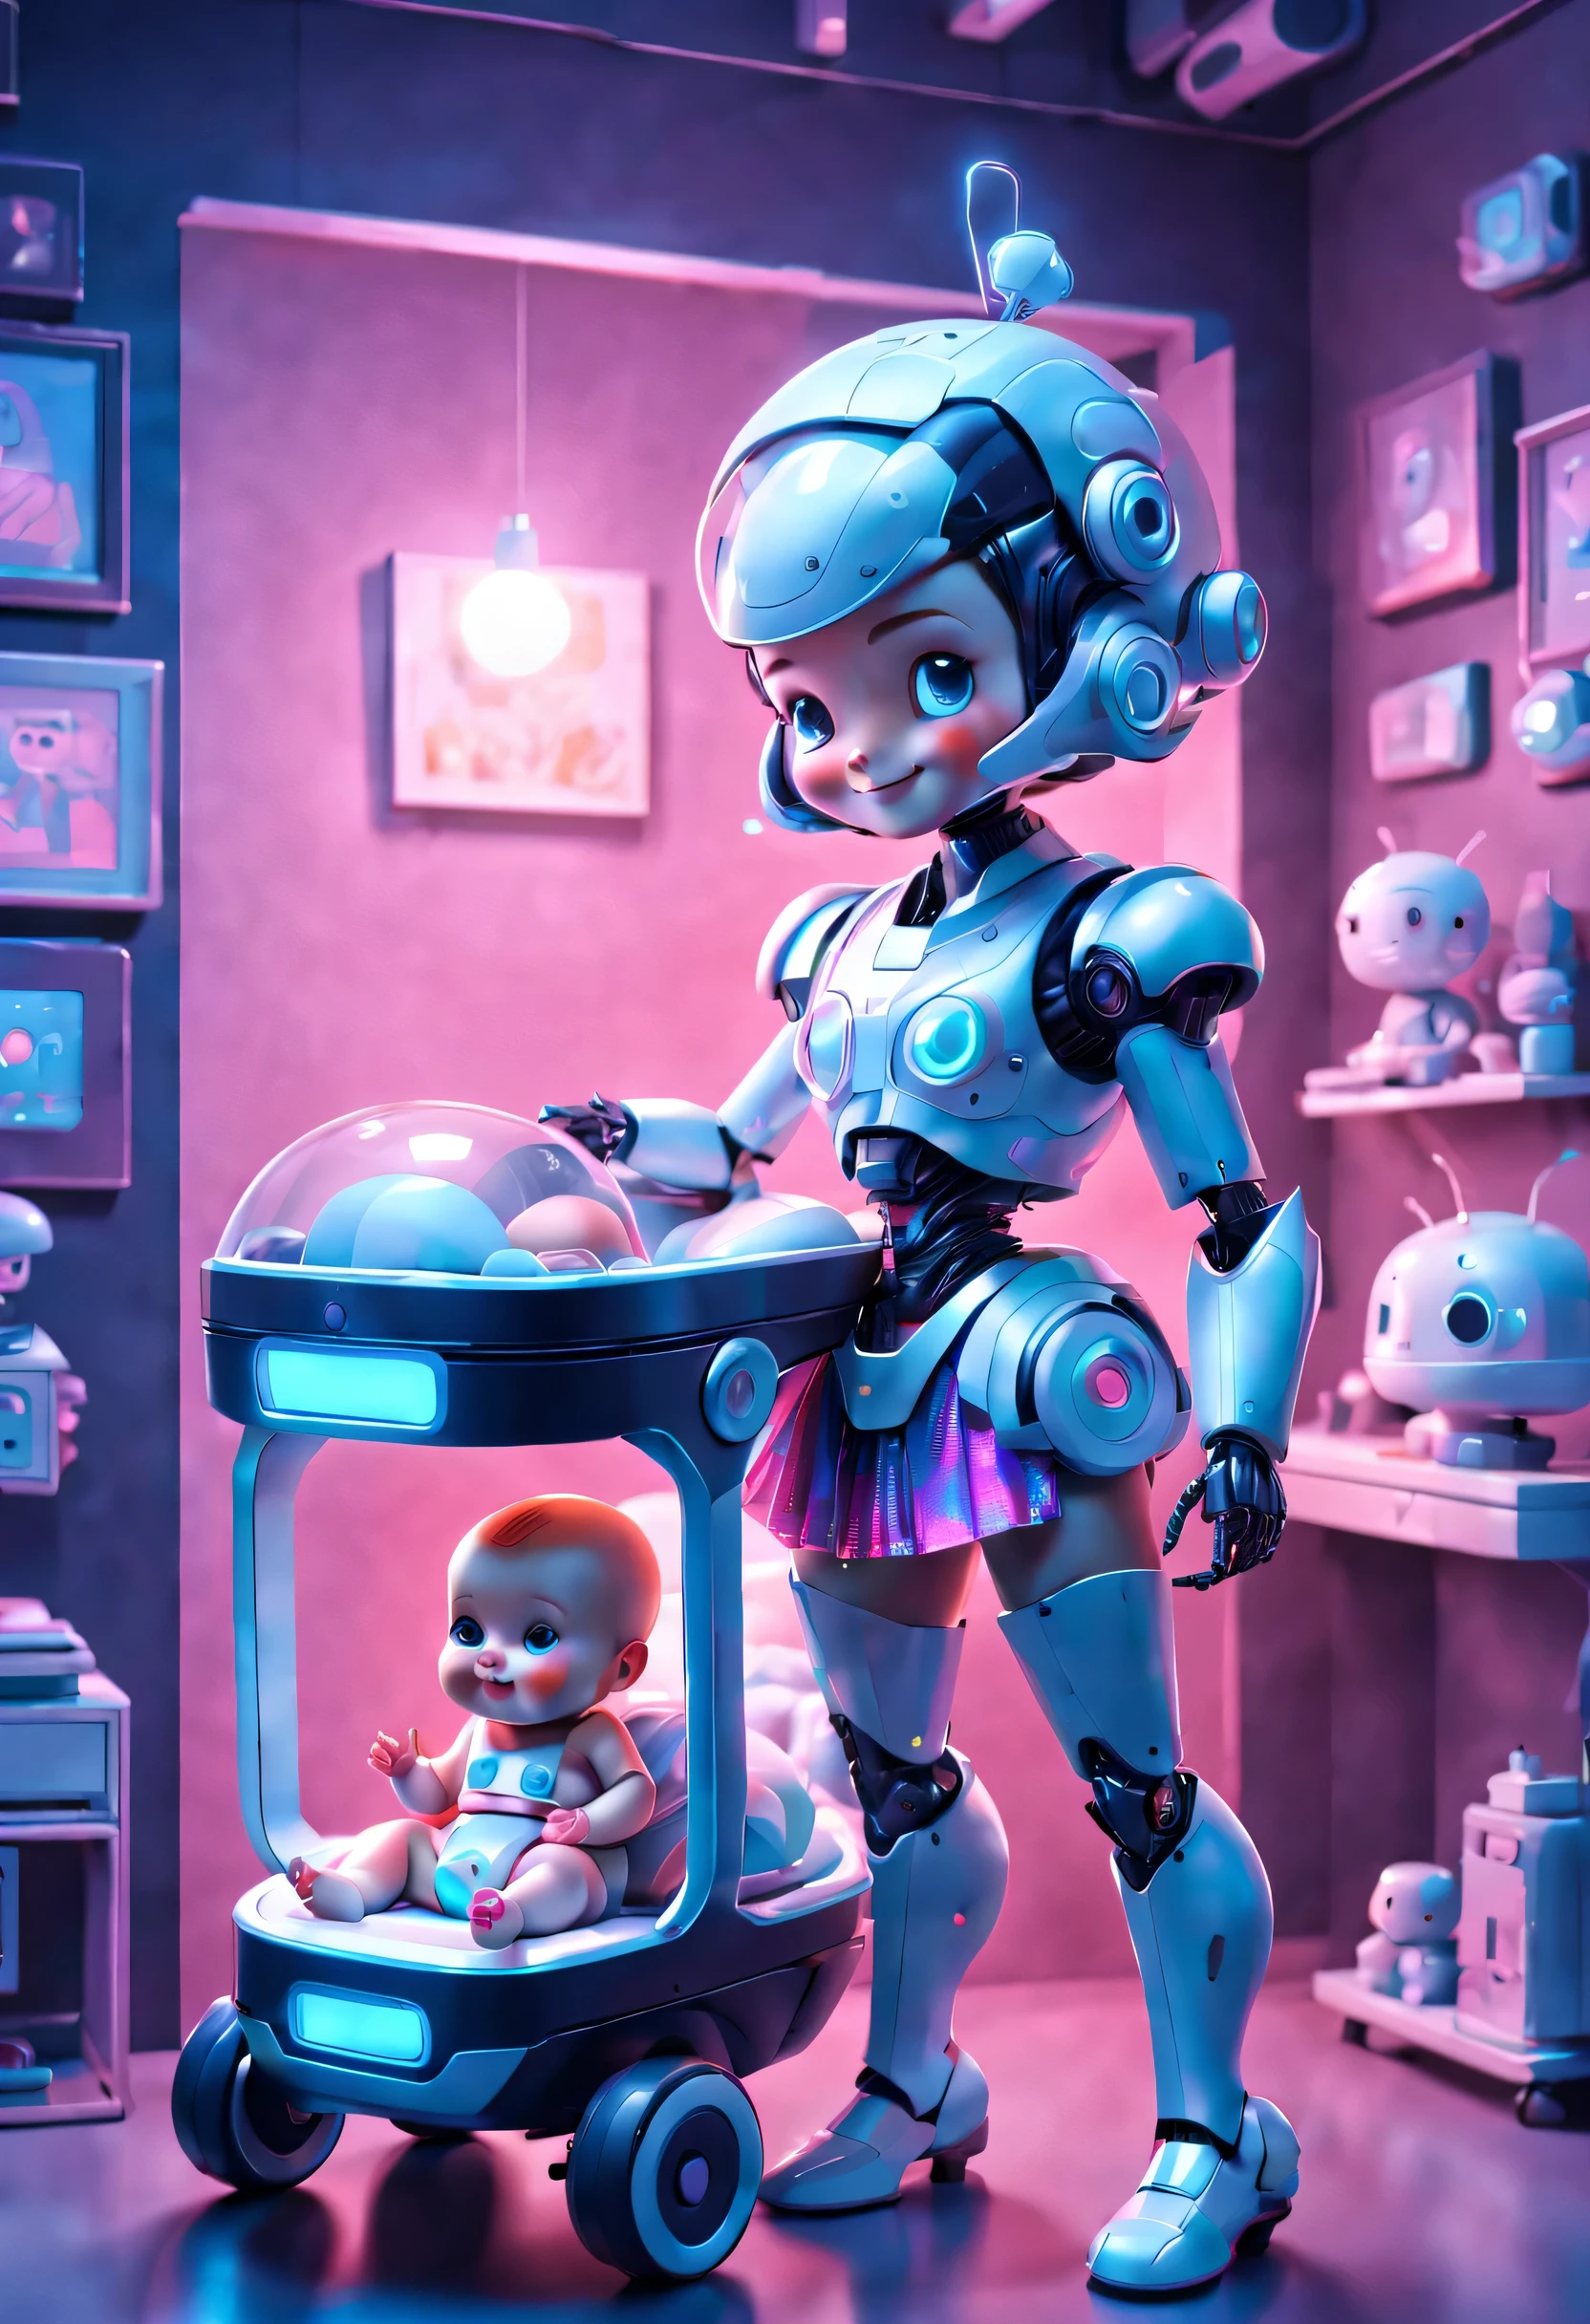 Conception des futurs personnages，Rétro-Futur，(Majordome robot portant une jupe rétro holographique，Souriant en regardant un joli bébé humain dans son berceau)，super chambre, 3D, style cyberpunk futuriste，，comme un rêve